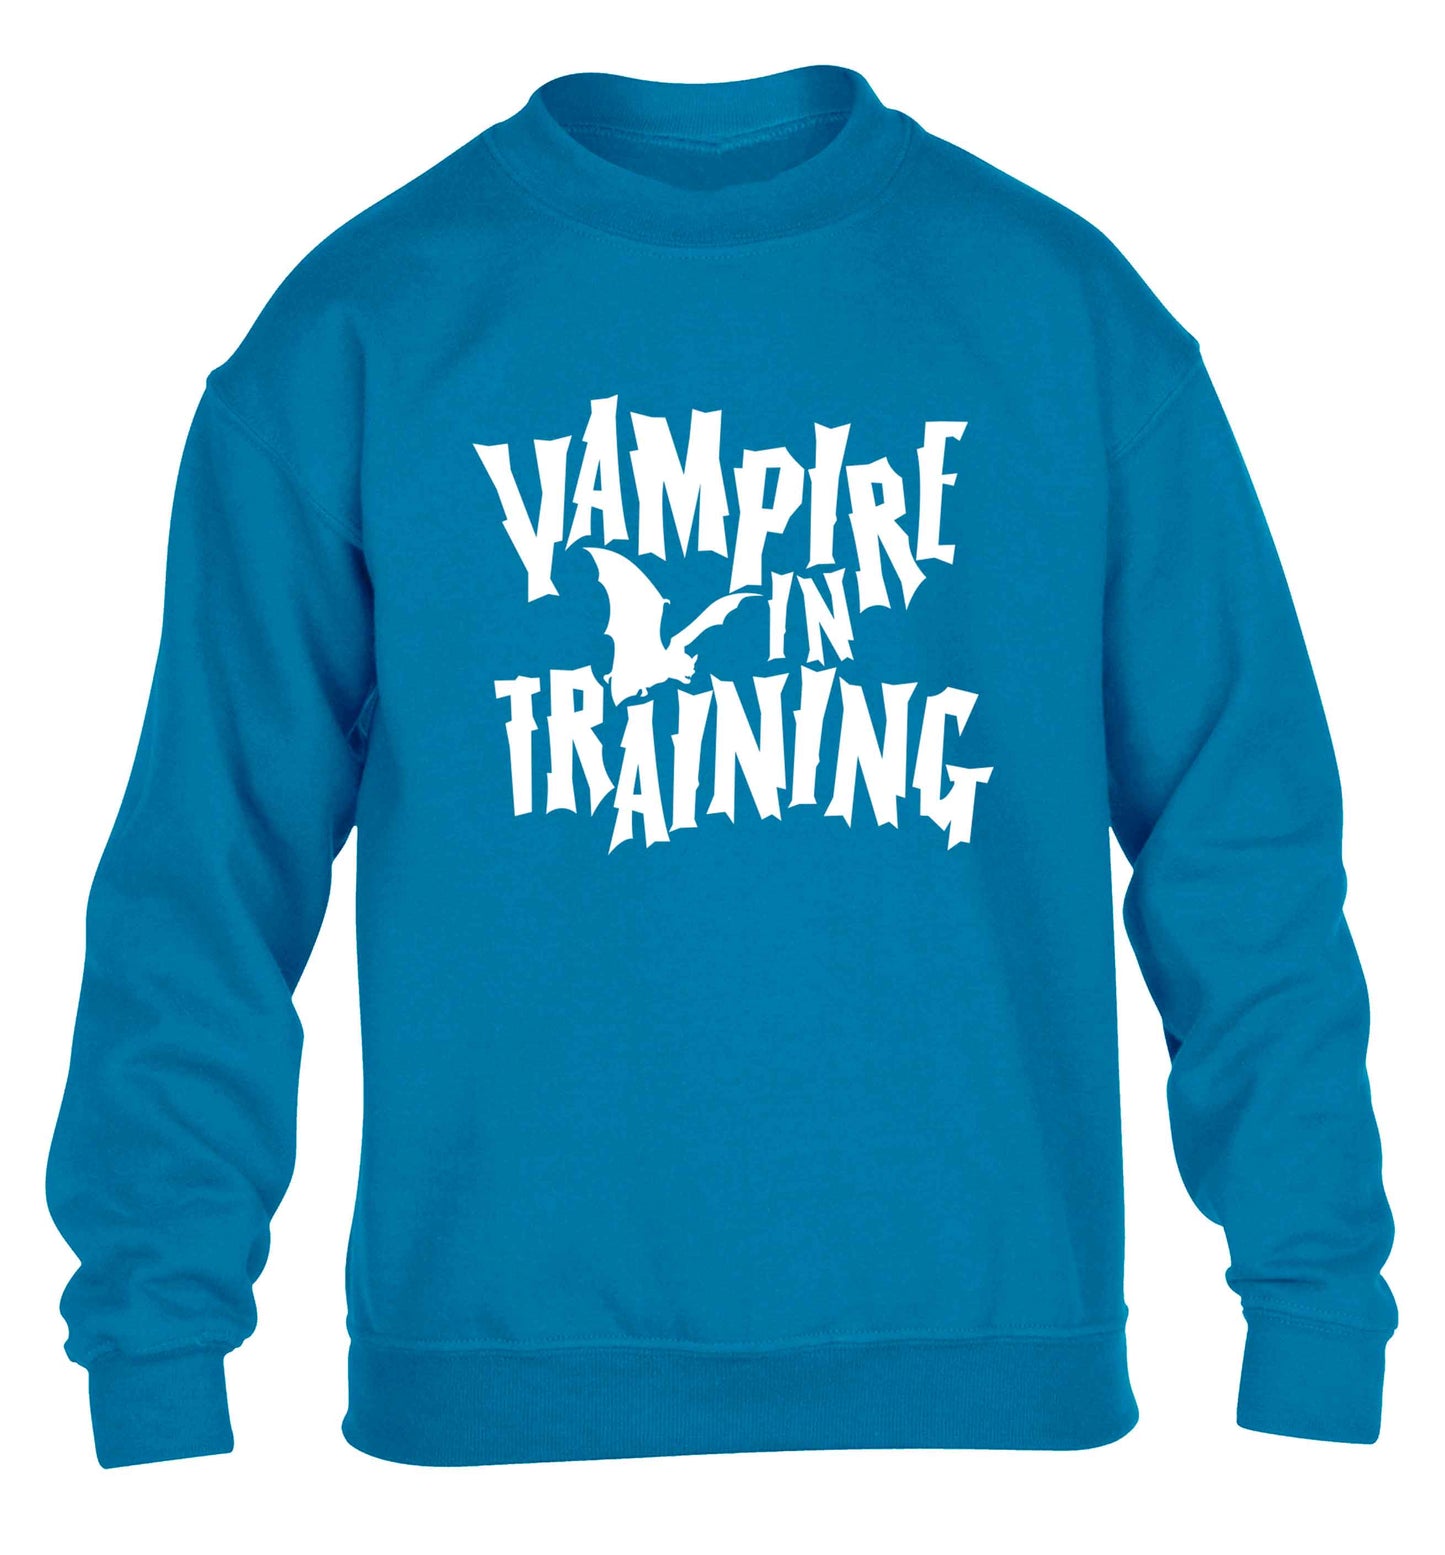 Vampire in training children's blue sweater 12-13 Years